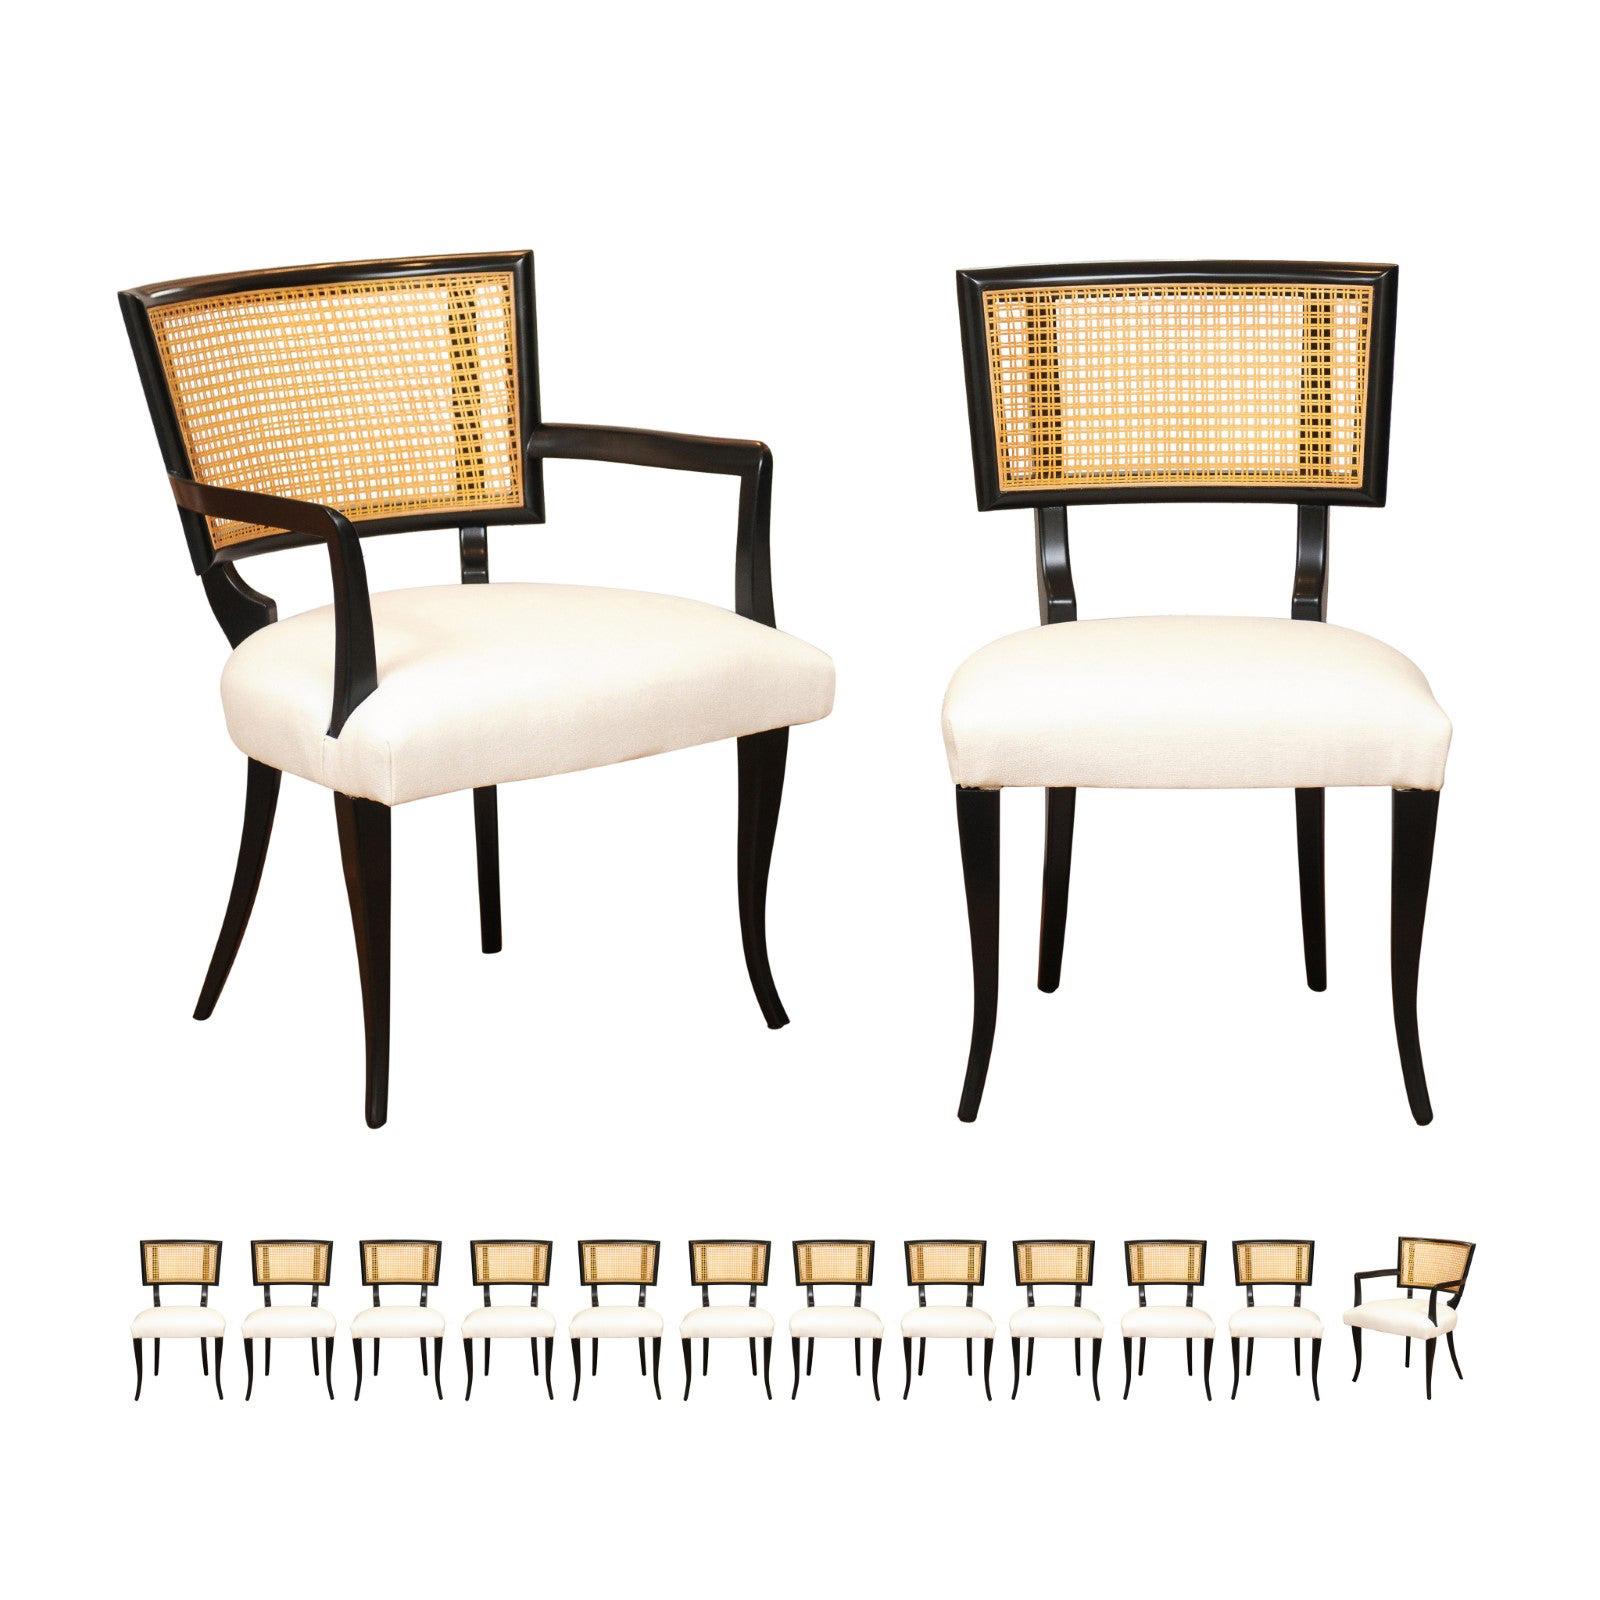 Magnifique ensemble de 14 chaises de salle à manger Klismos en rotin dans le style de Billy Haines